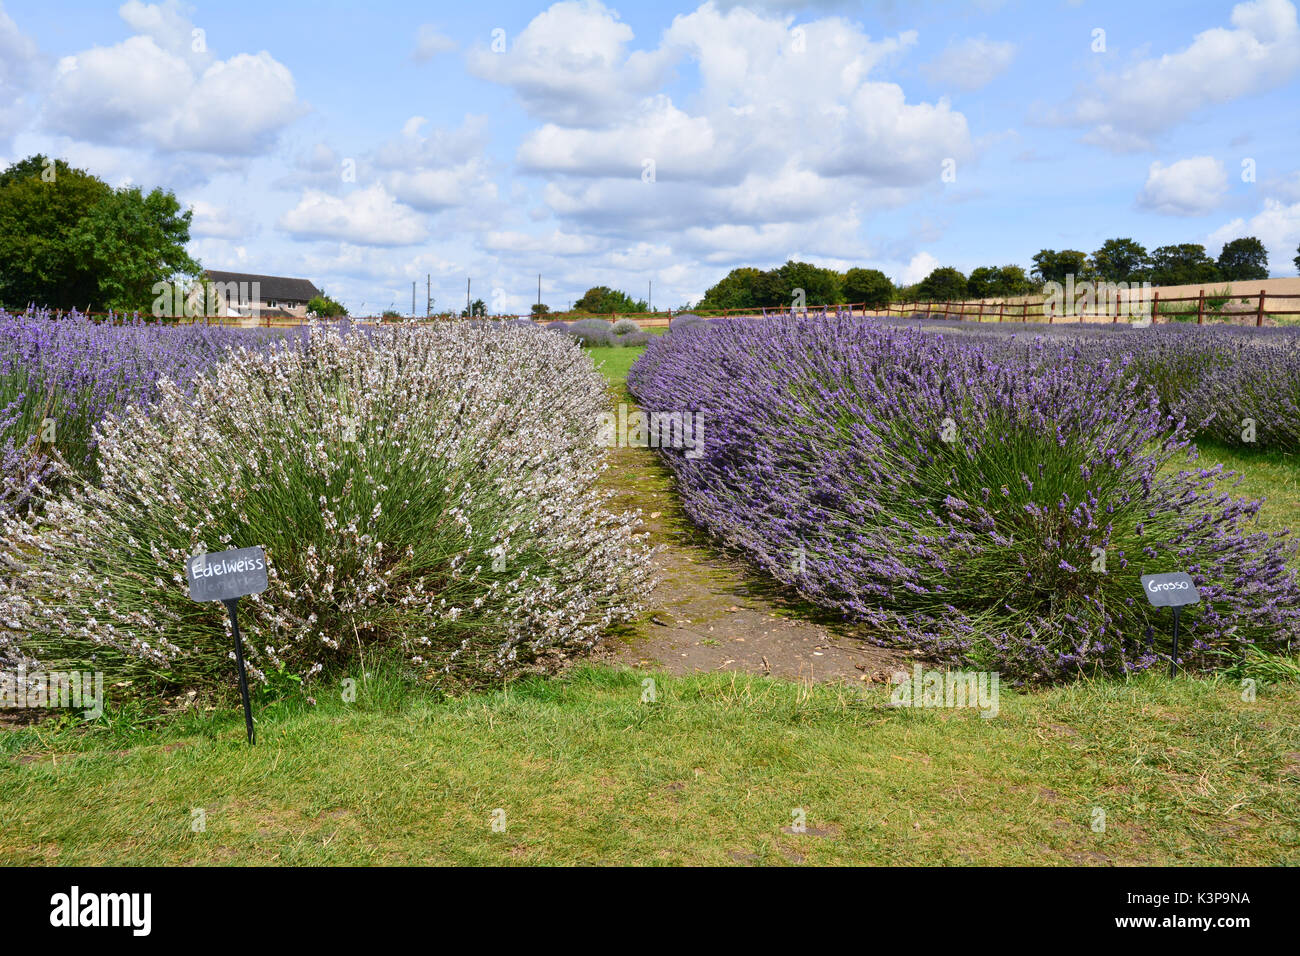 Rows of lavender (lavandula) flowers in field on farm Stock Photo